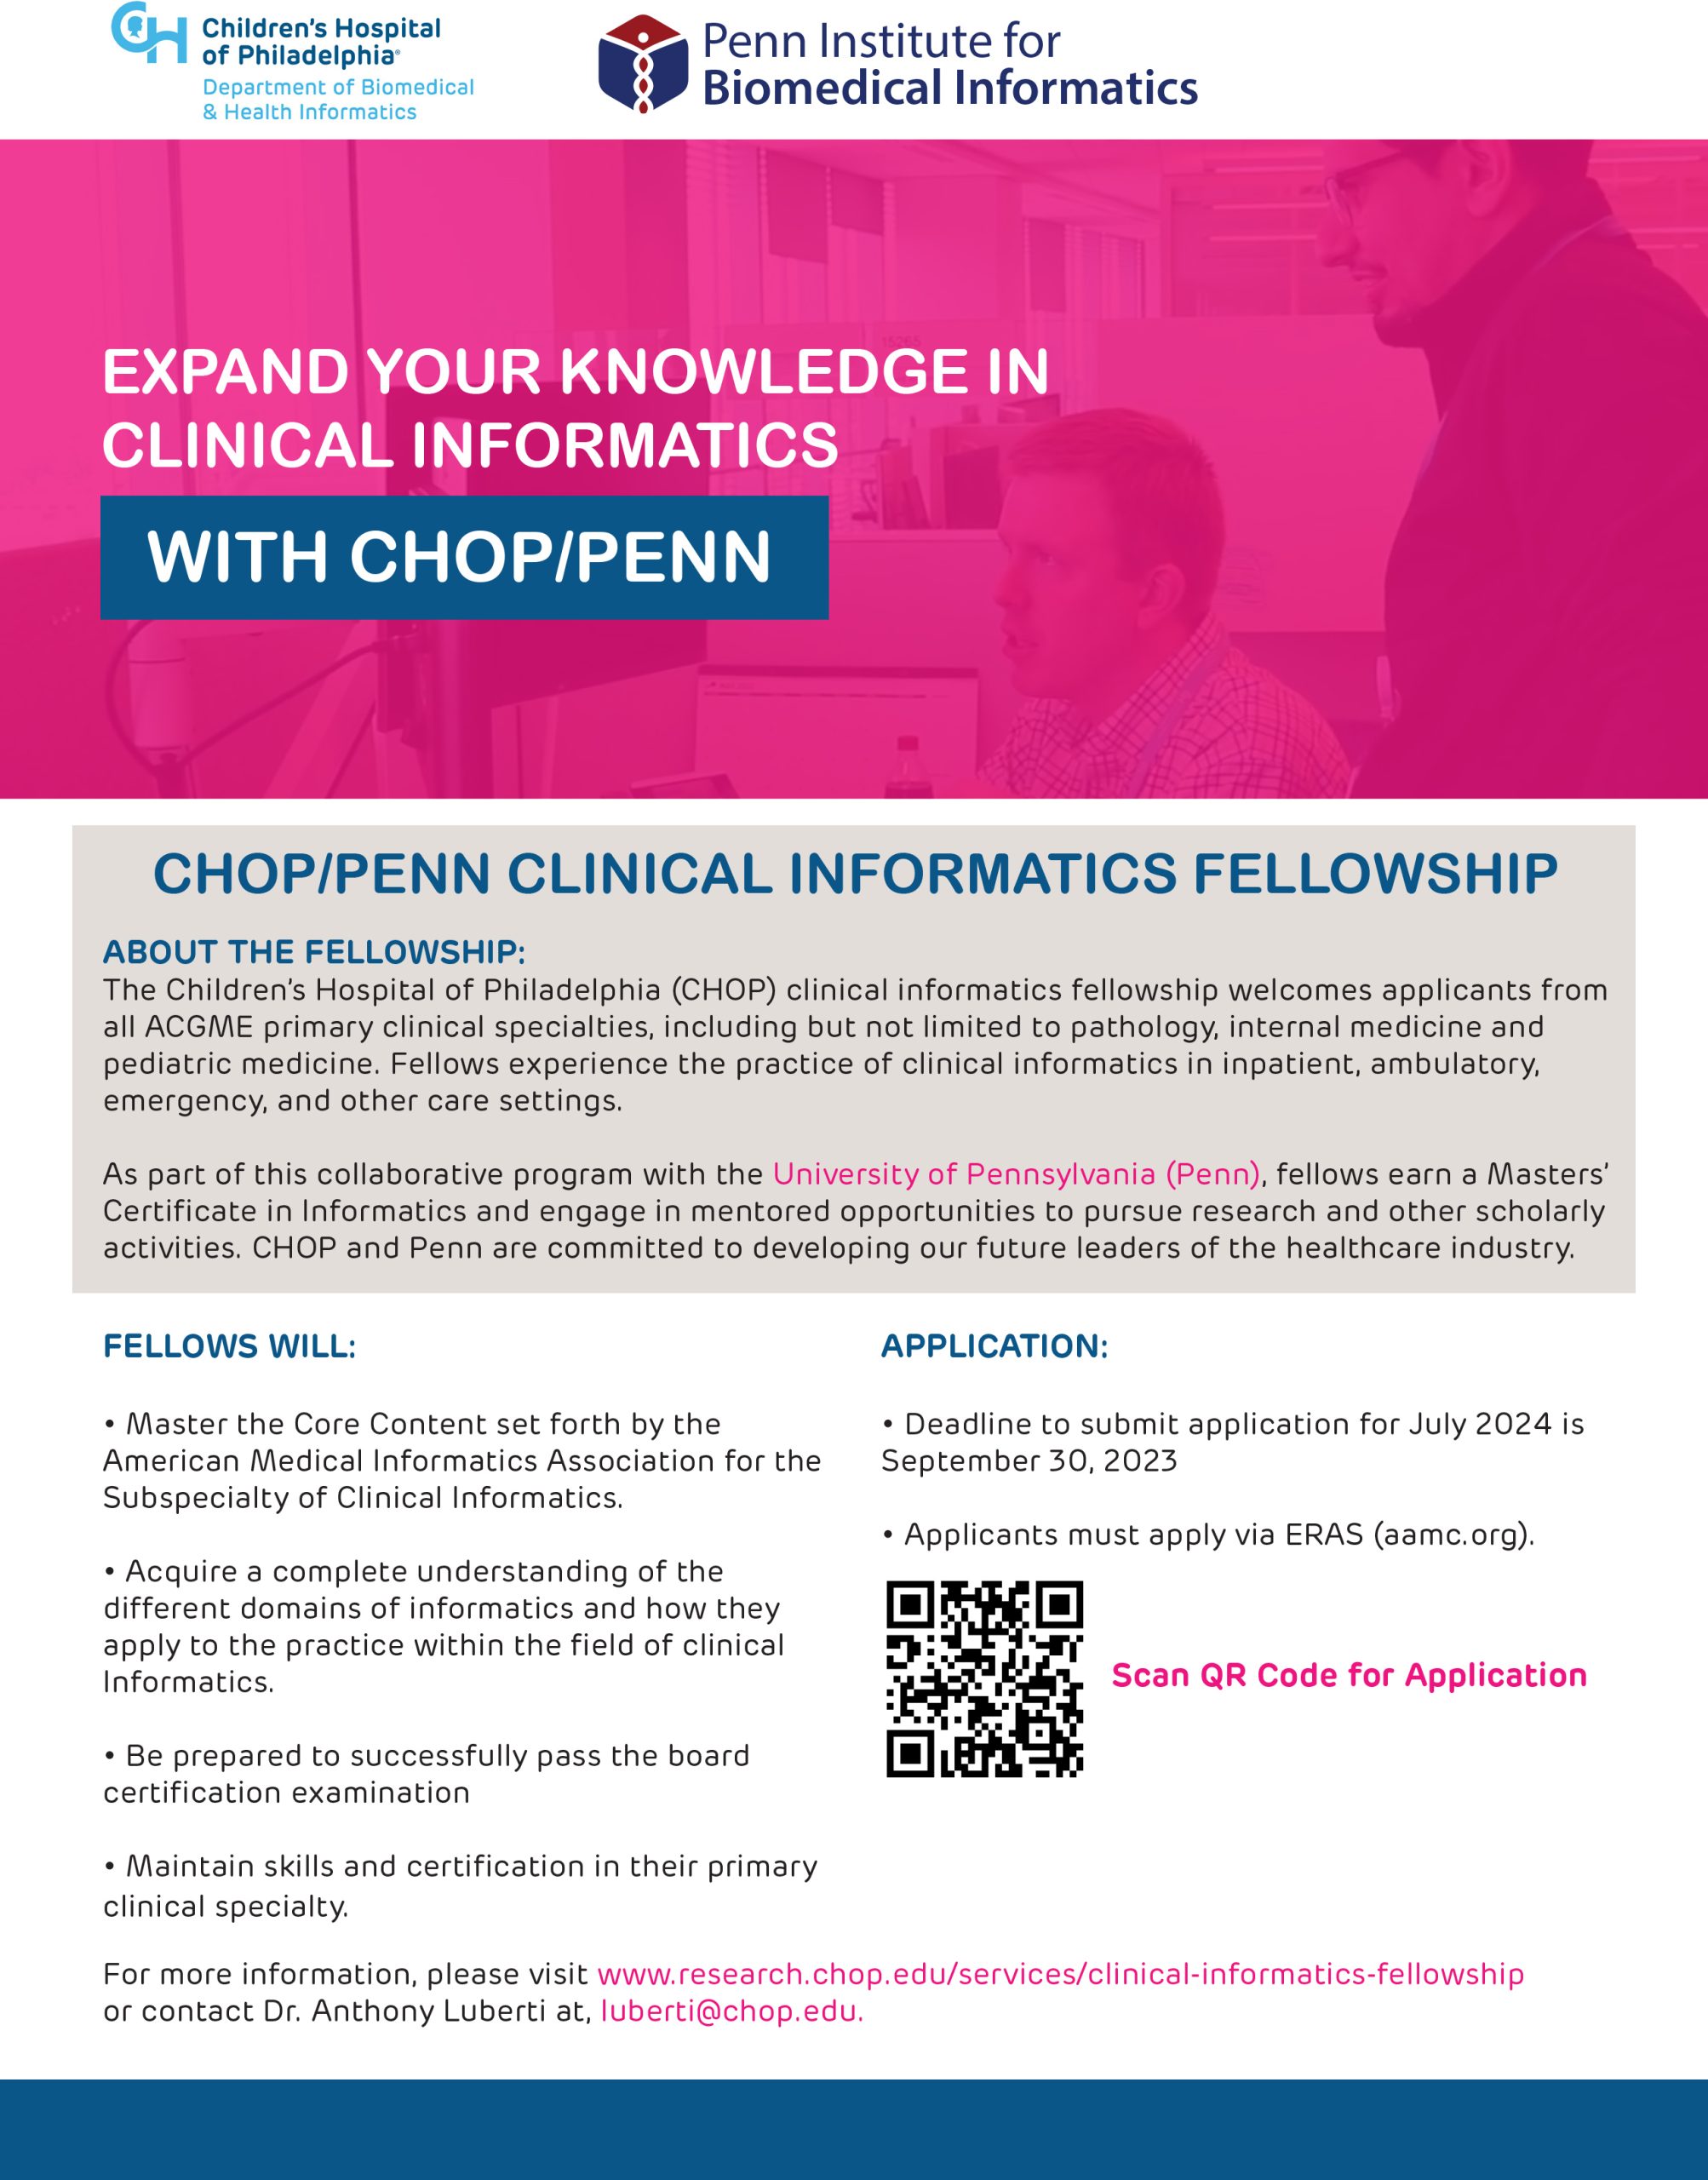 CHOP Informatics Fellowship Flyer